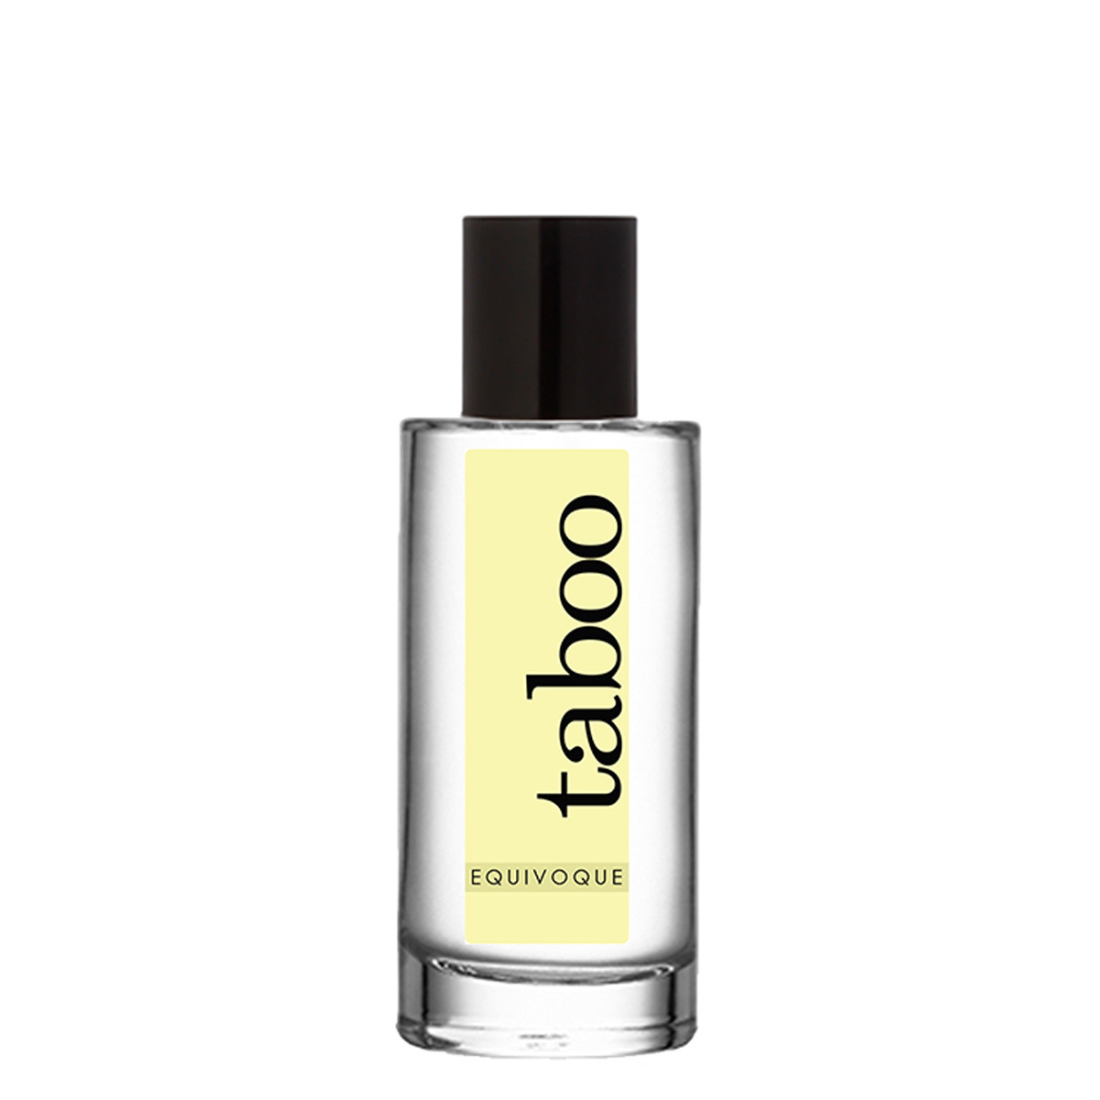 Taboo Equivoque fenomenen Parfum, te koop bij Flavourez.